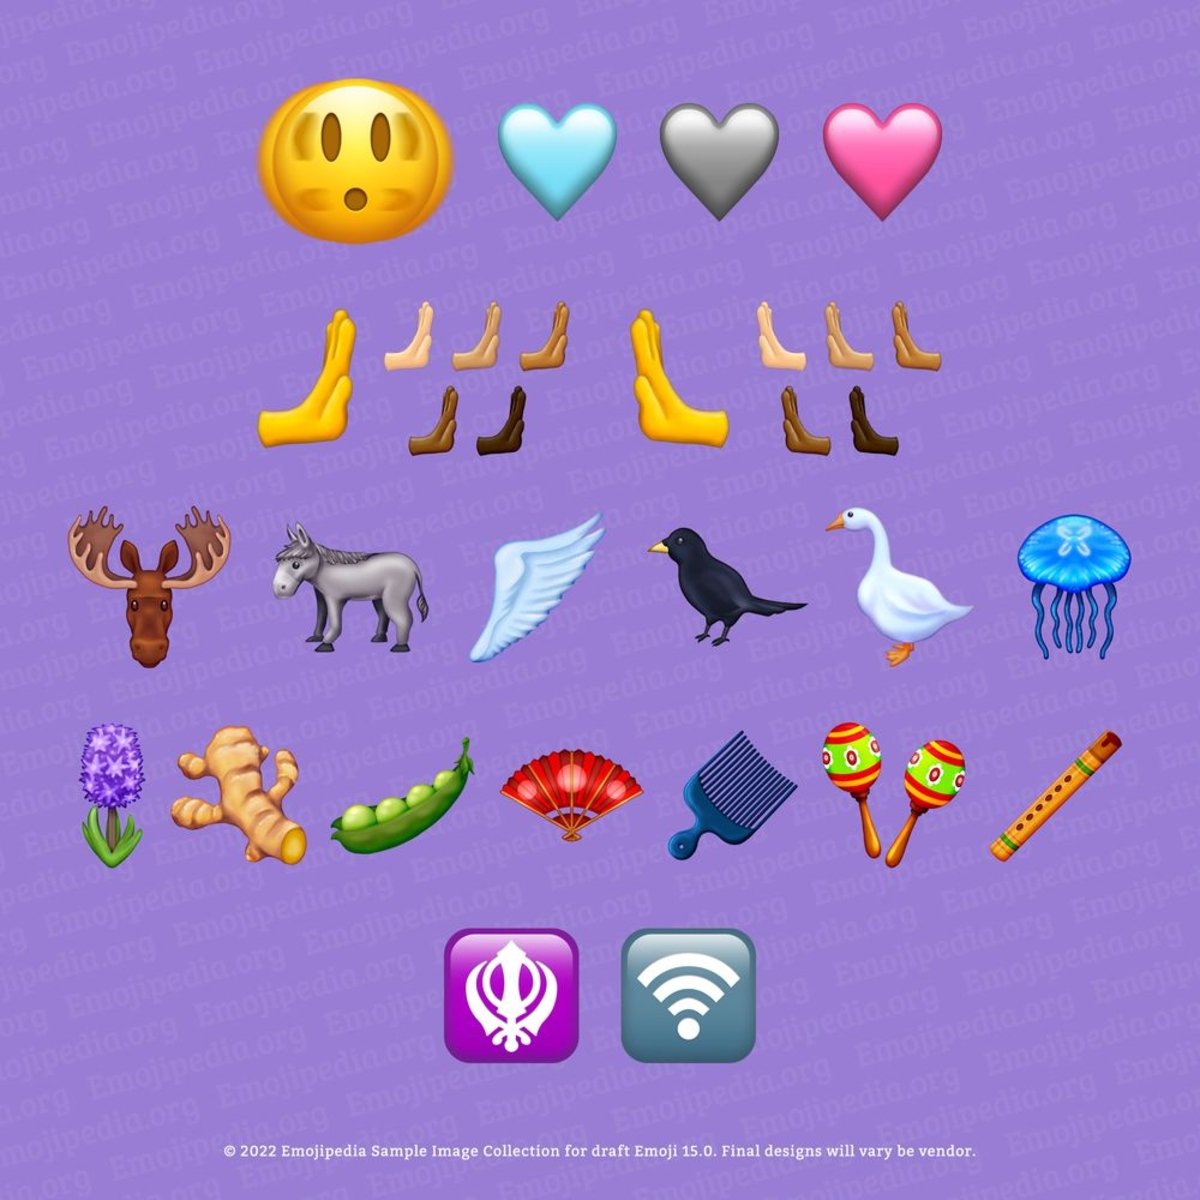 Lista completa de nuevos emojis para 2023